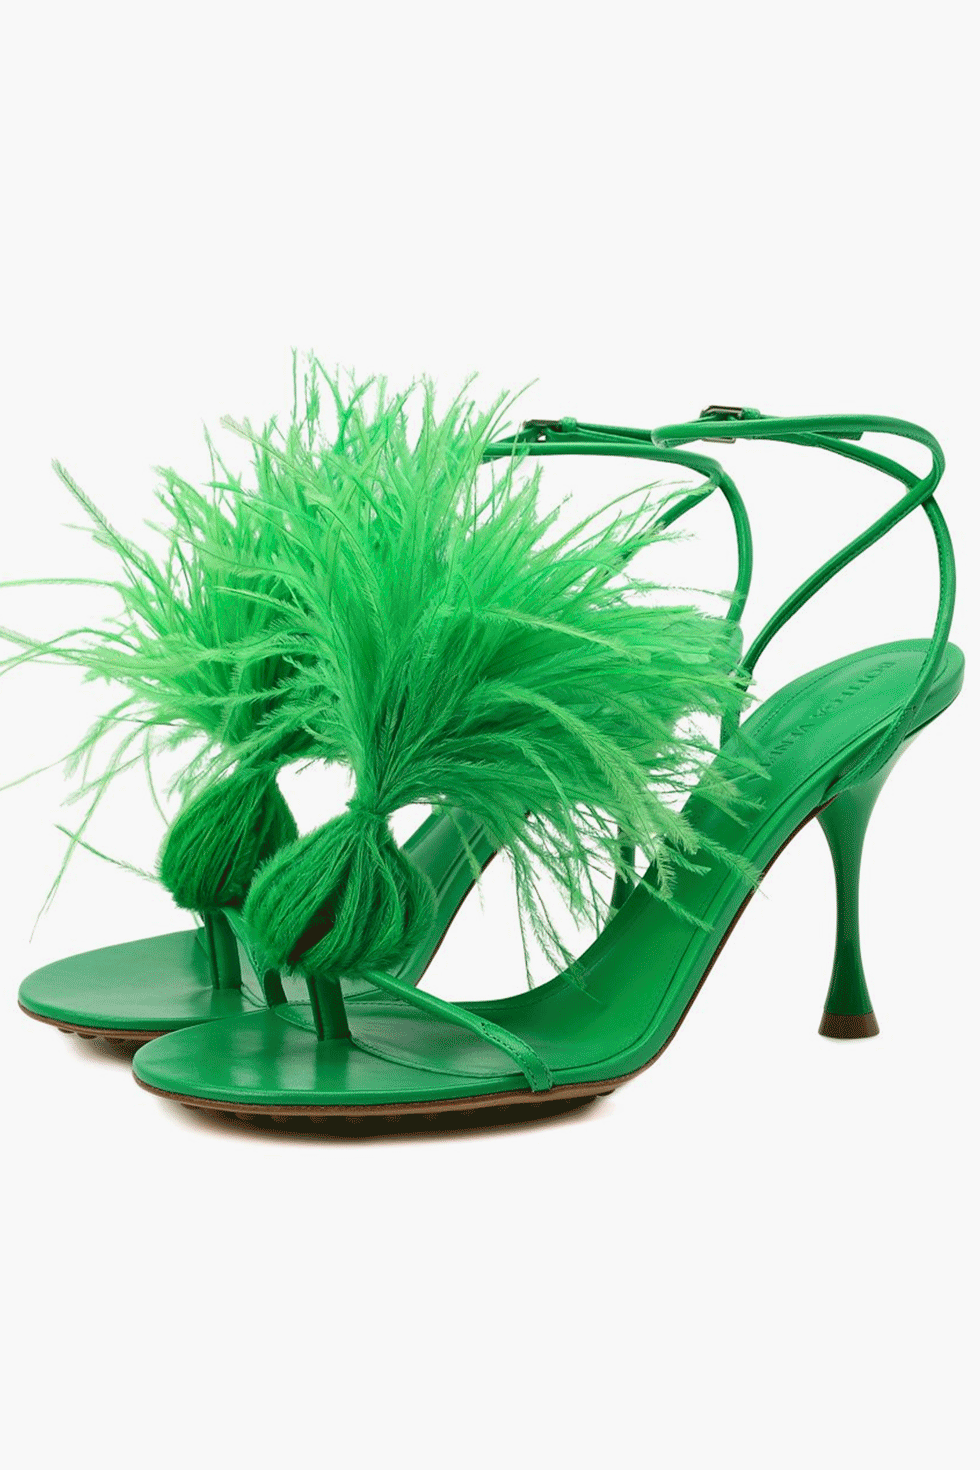 Босоножки Bottega Veneta с перьями — самая модная обувь прямо сейчас